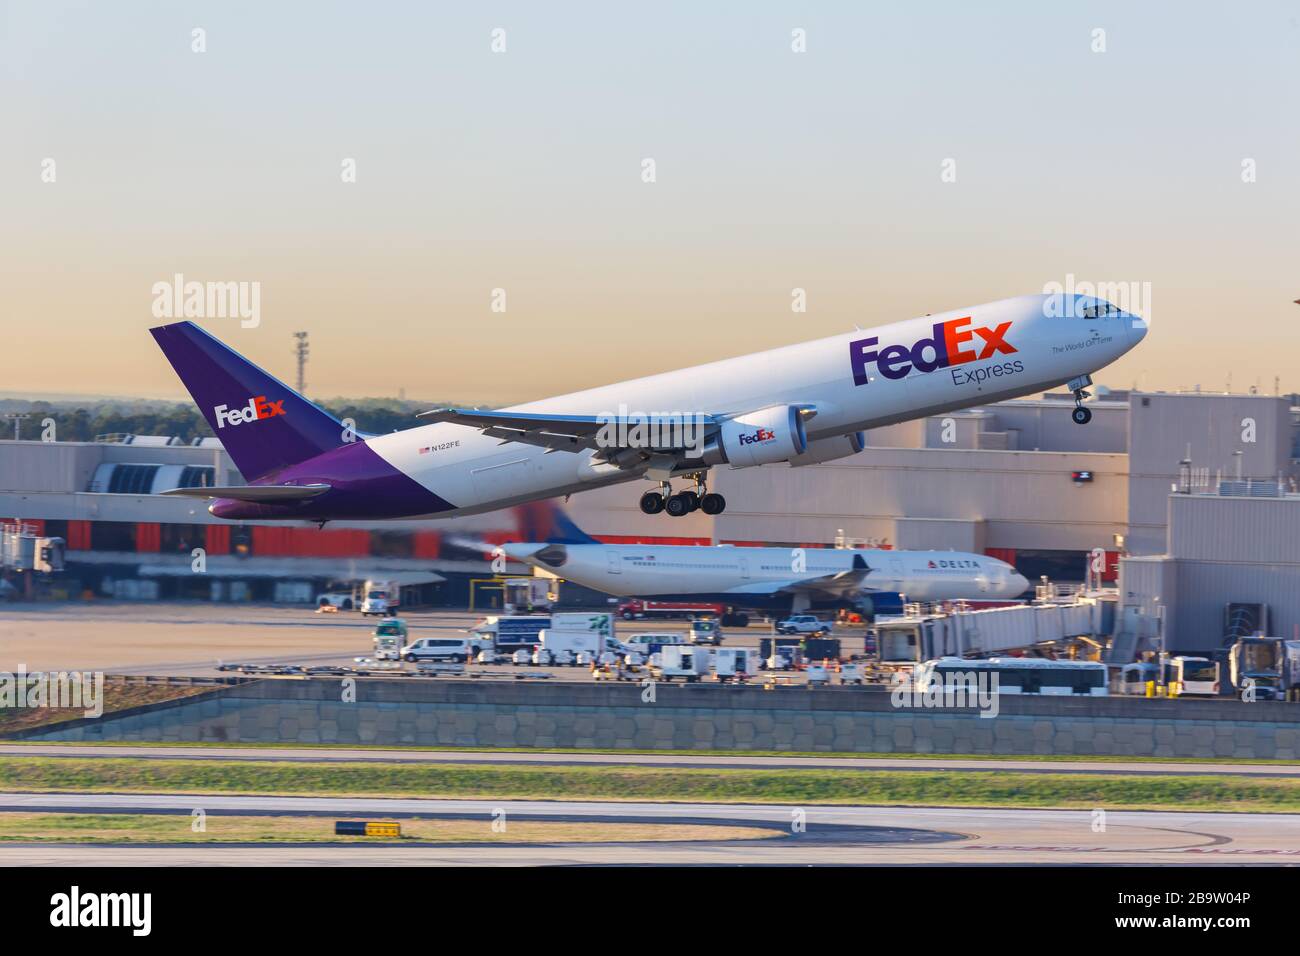 Atlanta, Georgia – 3 de abril de 2019: Avión FedEx Express Boeing 767-300F en el aeropuerto de Atlanta (ATL) en Georgia. Boeing es un fabricante americano de aviones Foto de stock